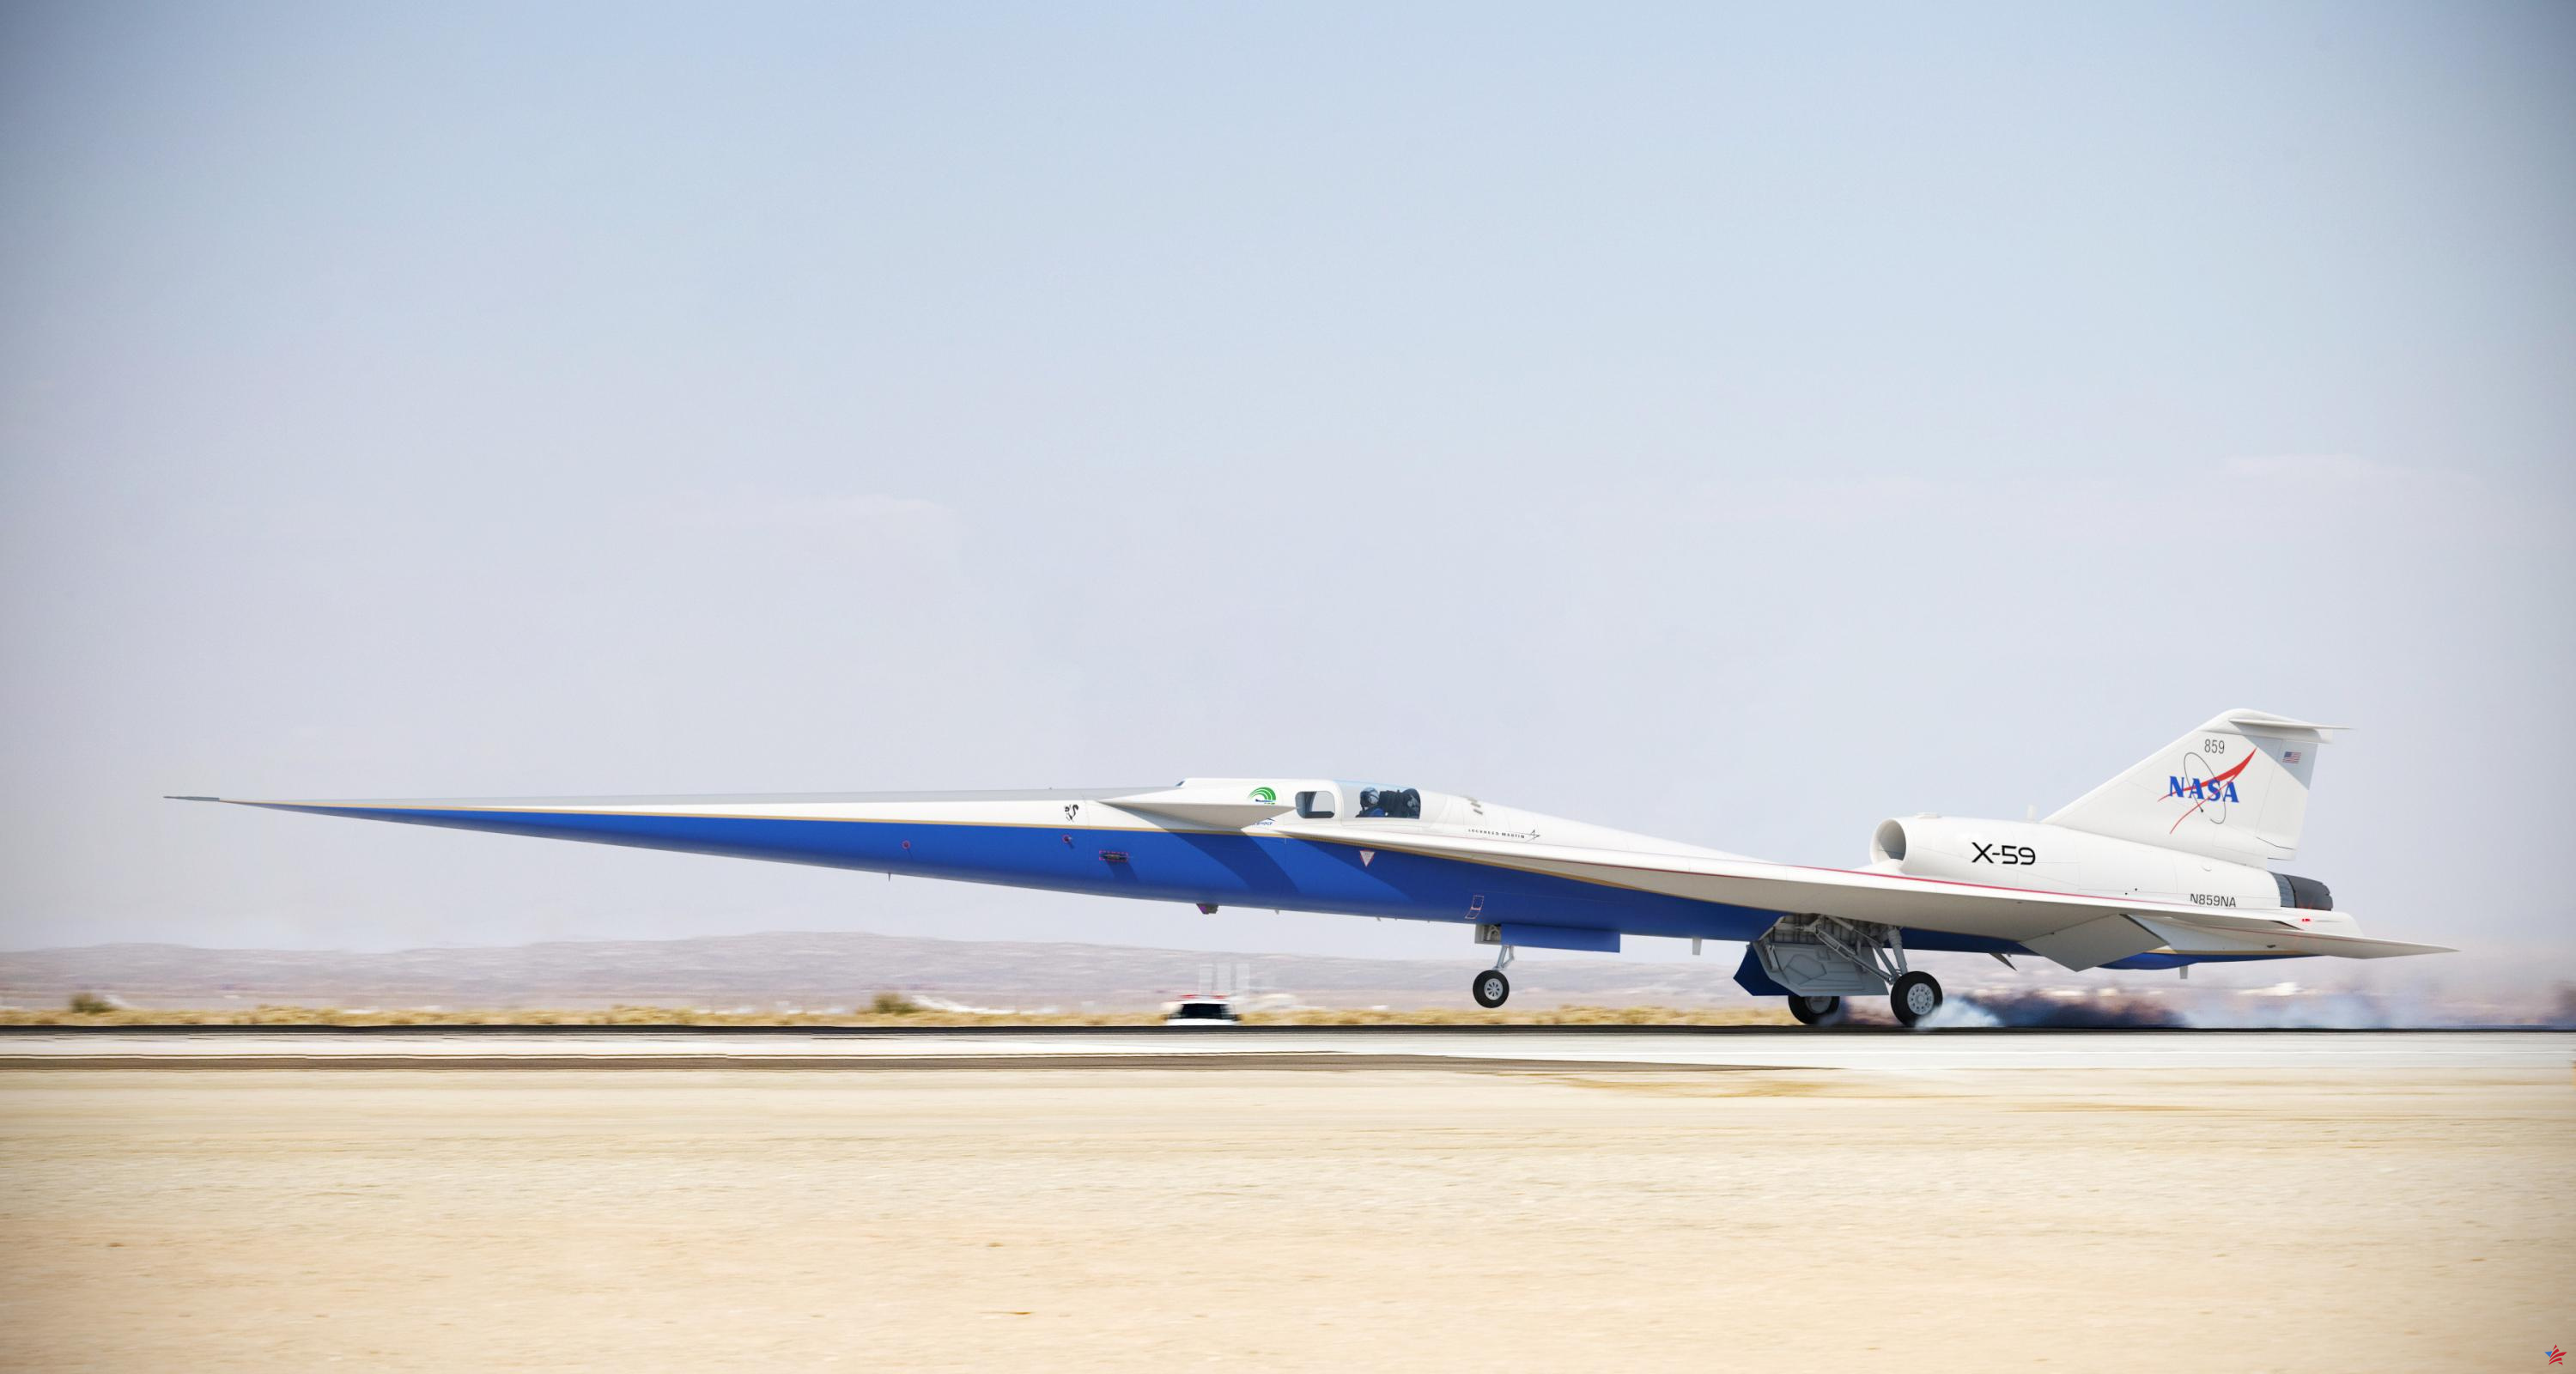 ¿Cómo funciona el X-59, el primer avión supersónico sin pluma de la NASA?